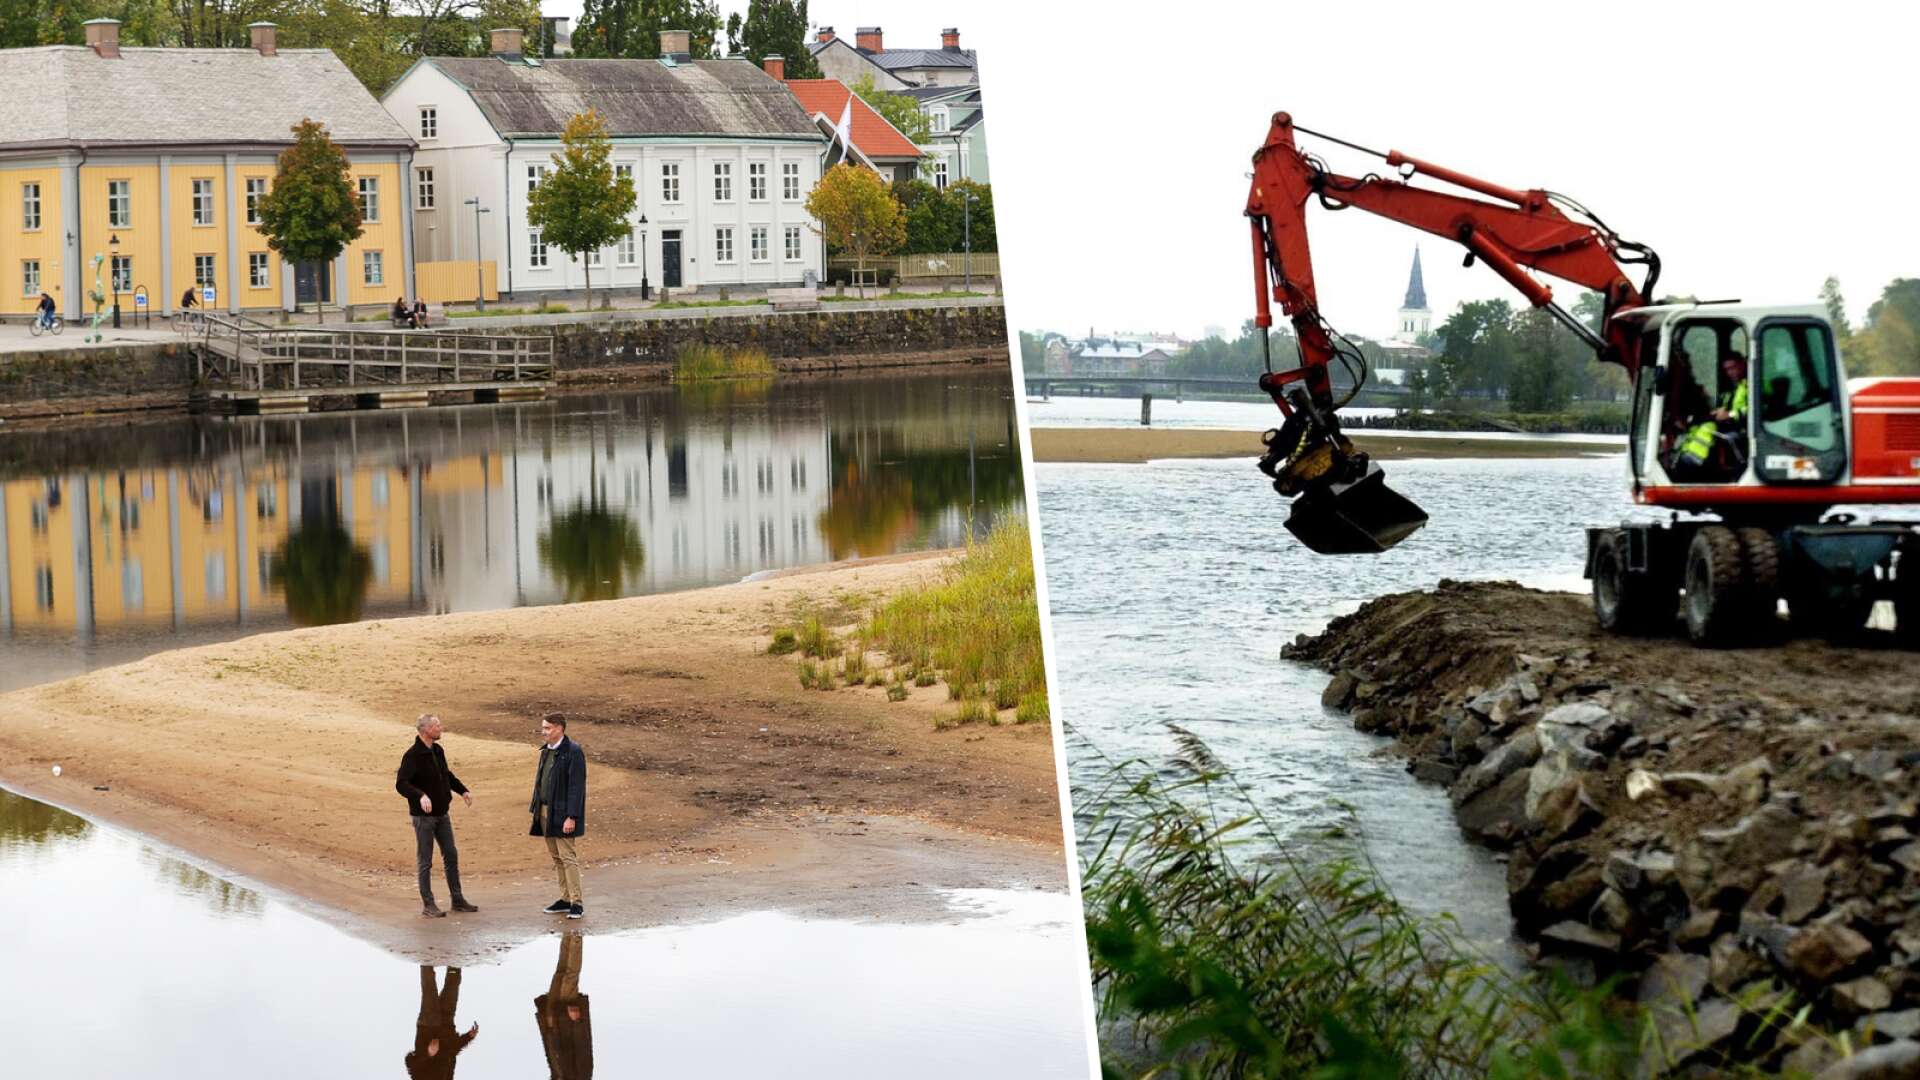 Kommunen hoppas slippa regeringsbeslut • 100 000 kubikmeter sand • ”Ökar riskerna för översvämning”